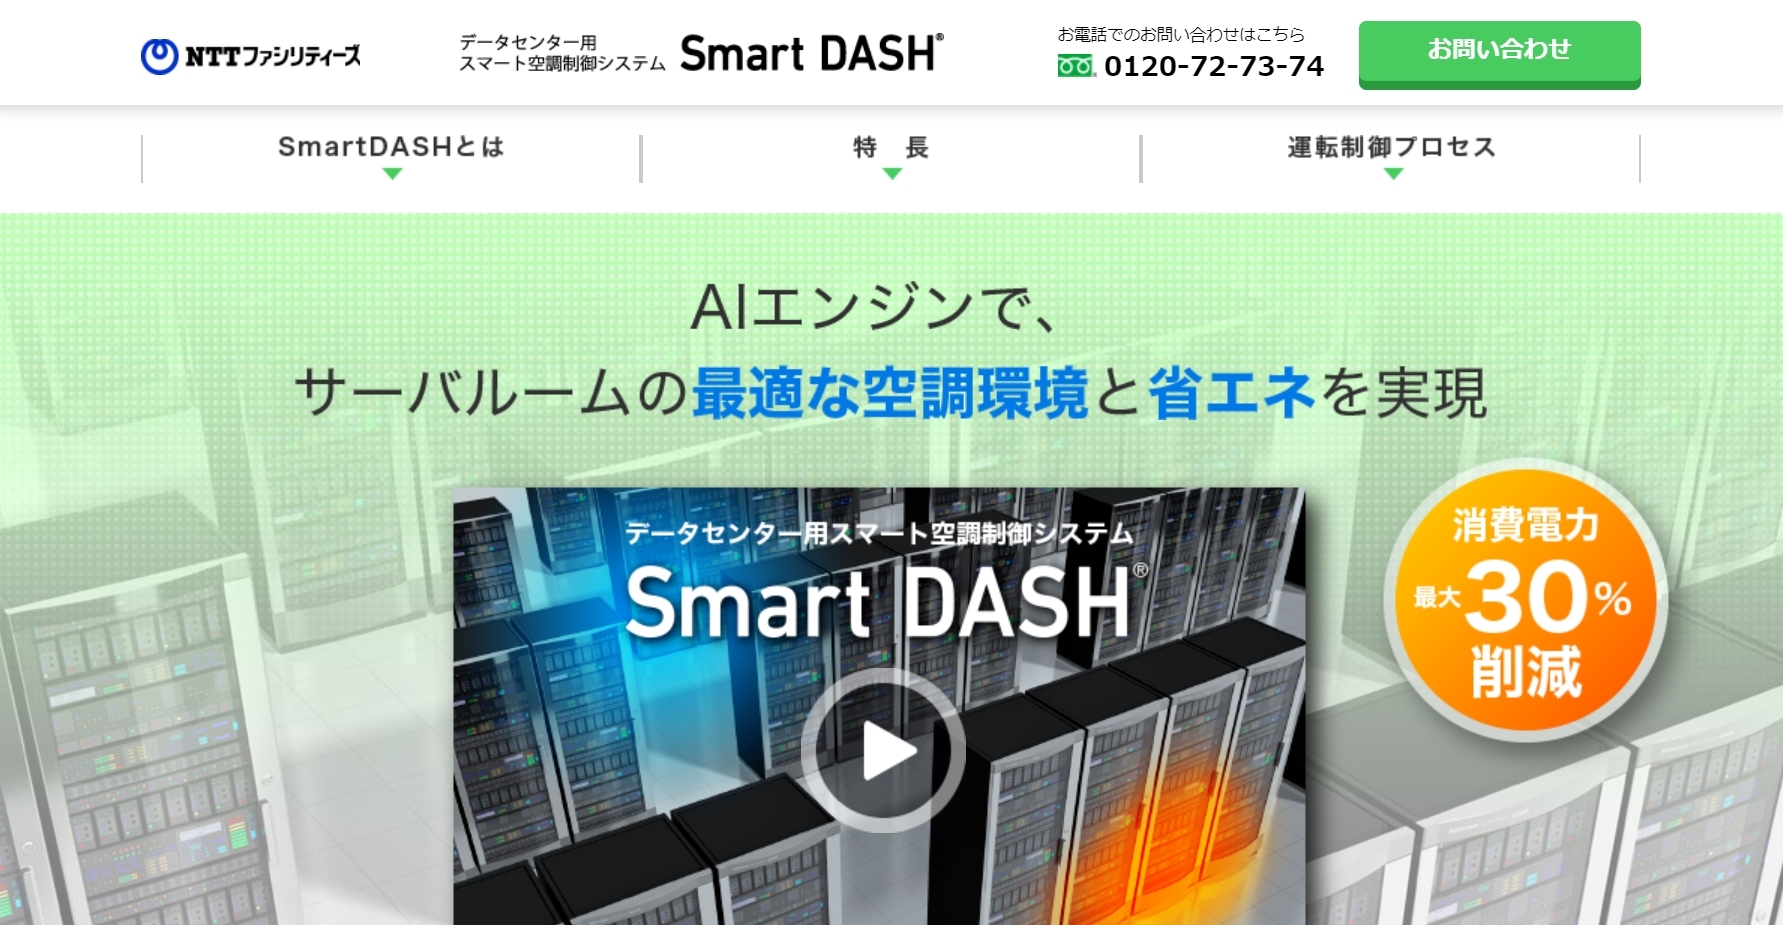 SmartDASH